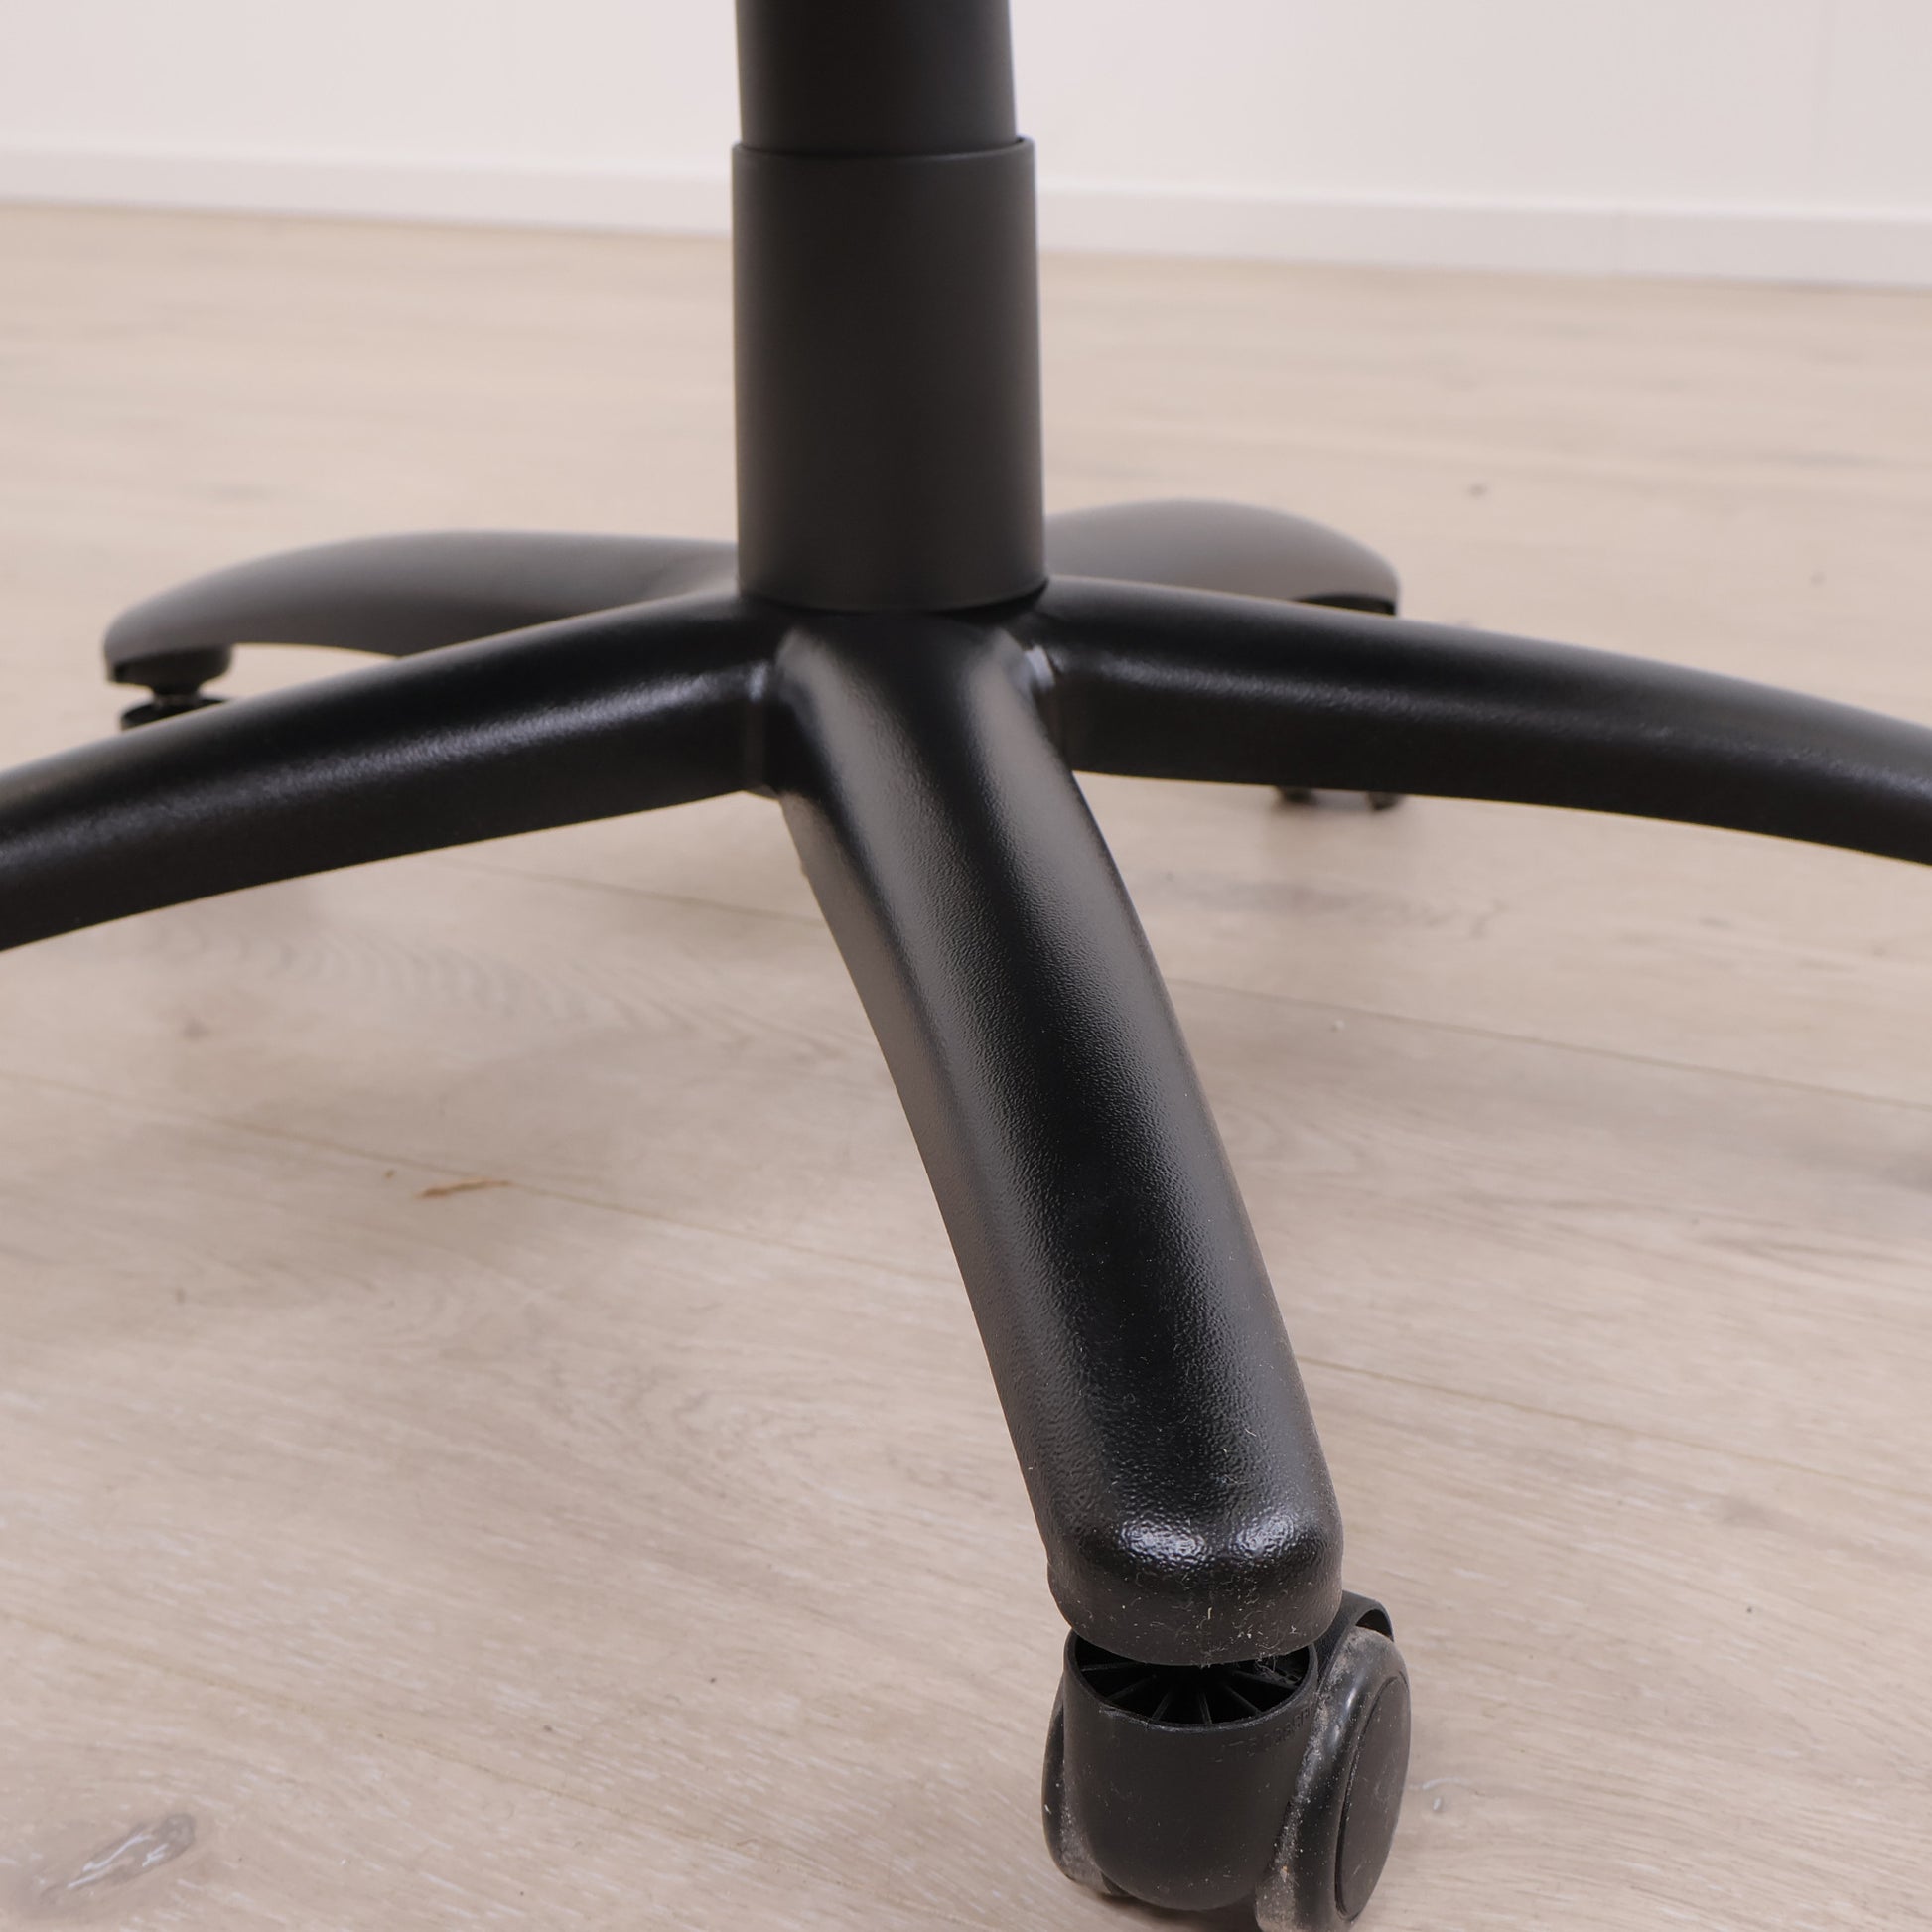 Kun brukt til utstilling | Tamdrup kontorstol i sort med trinnløs vippefunksjon